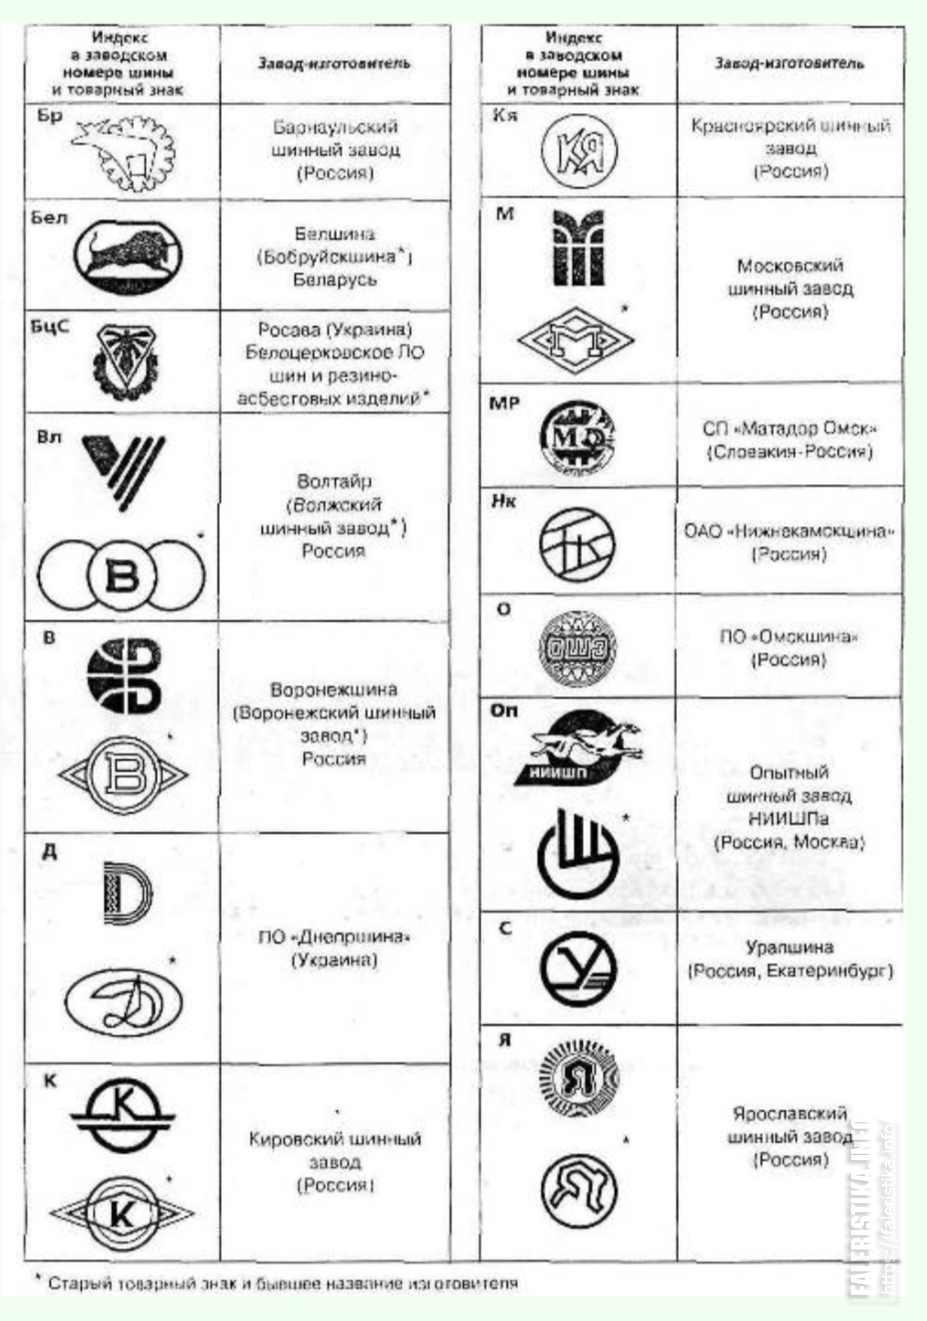 Товарные знаки шинных заводов СССР